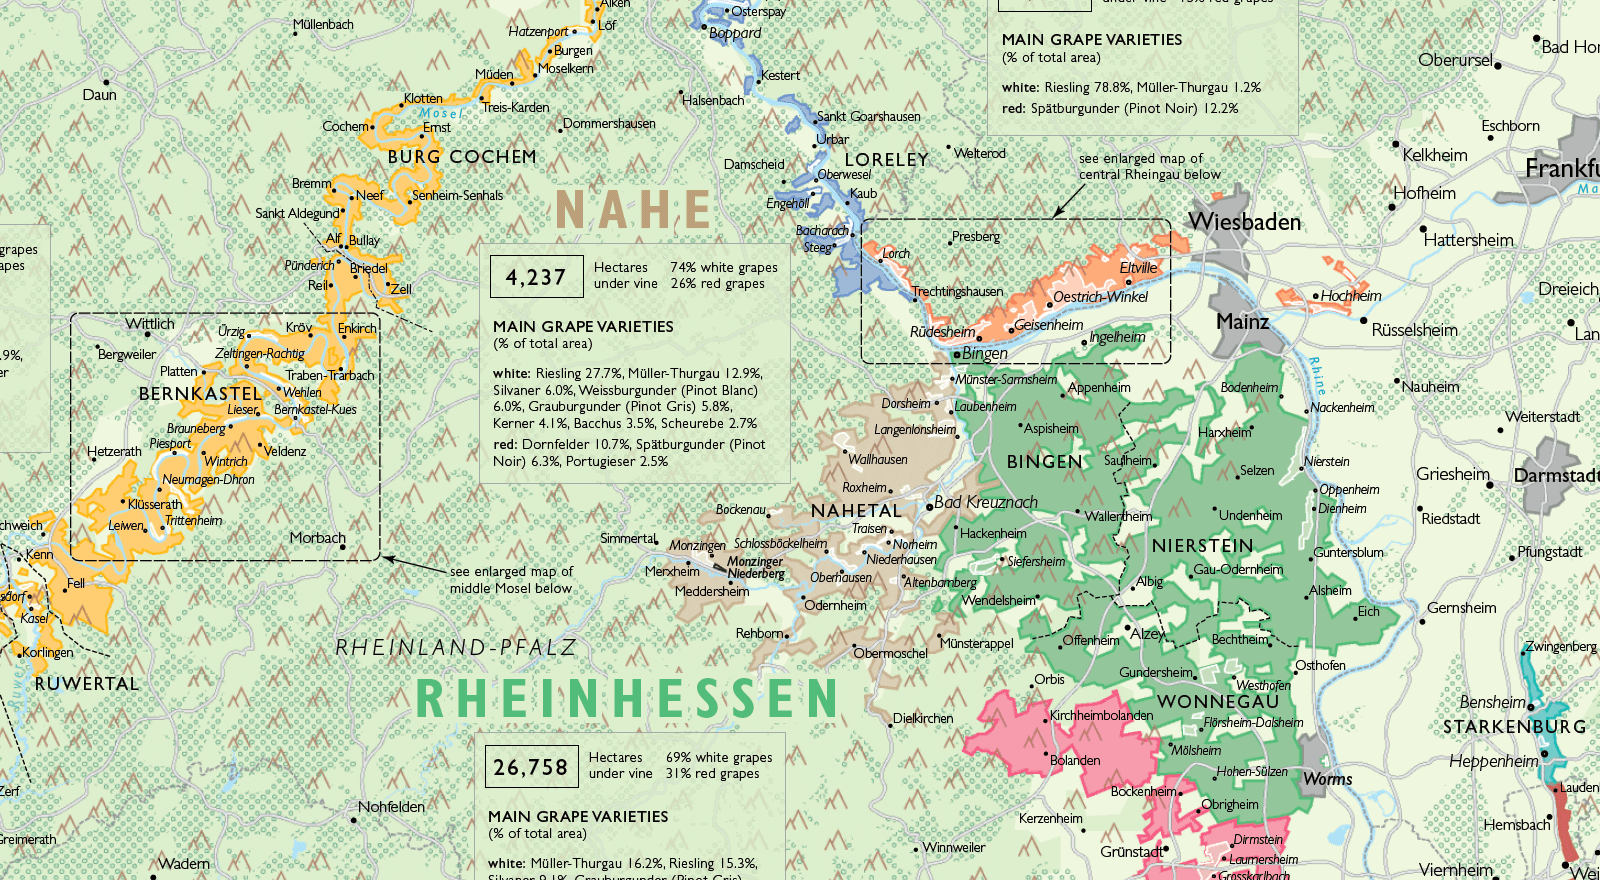 De Long Wine Map of Germany - Mosel, Rheinhessen